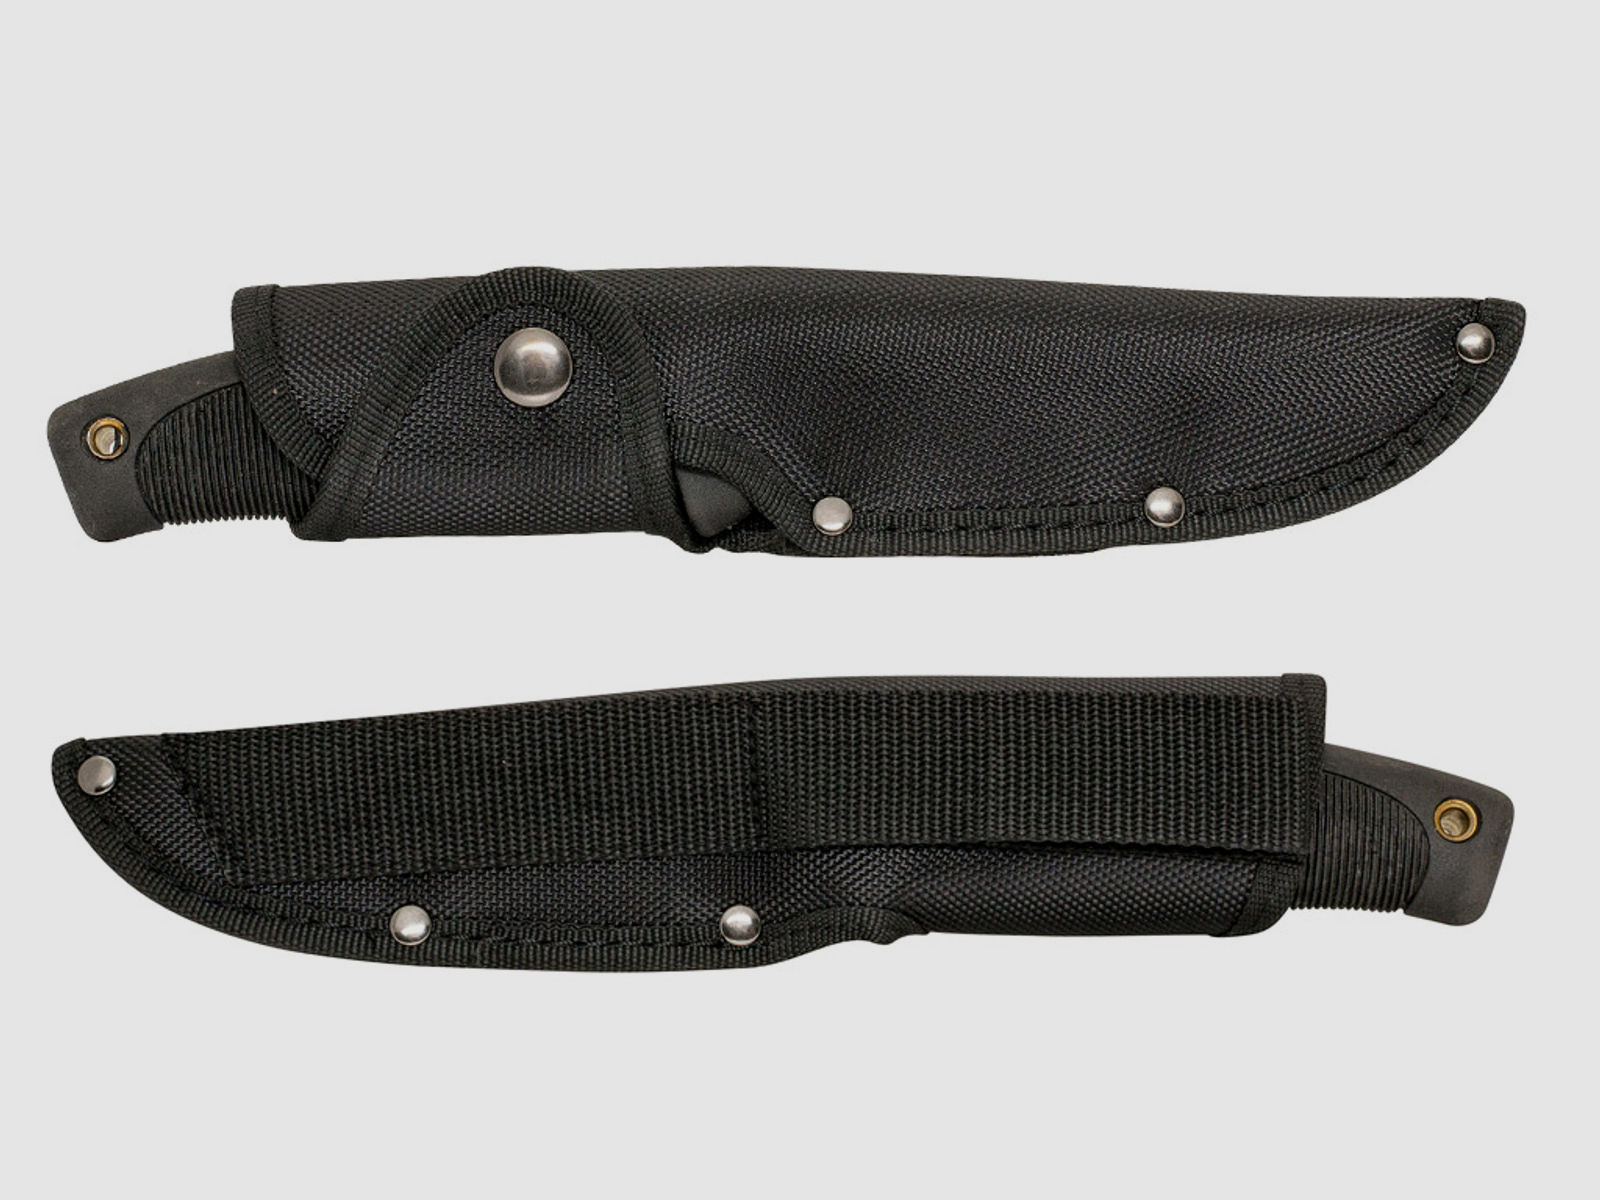 Jagdmesser Buffalo River Maxim Bowie Knife 5,5 Zoll, 420 Stahl (P18)